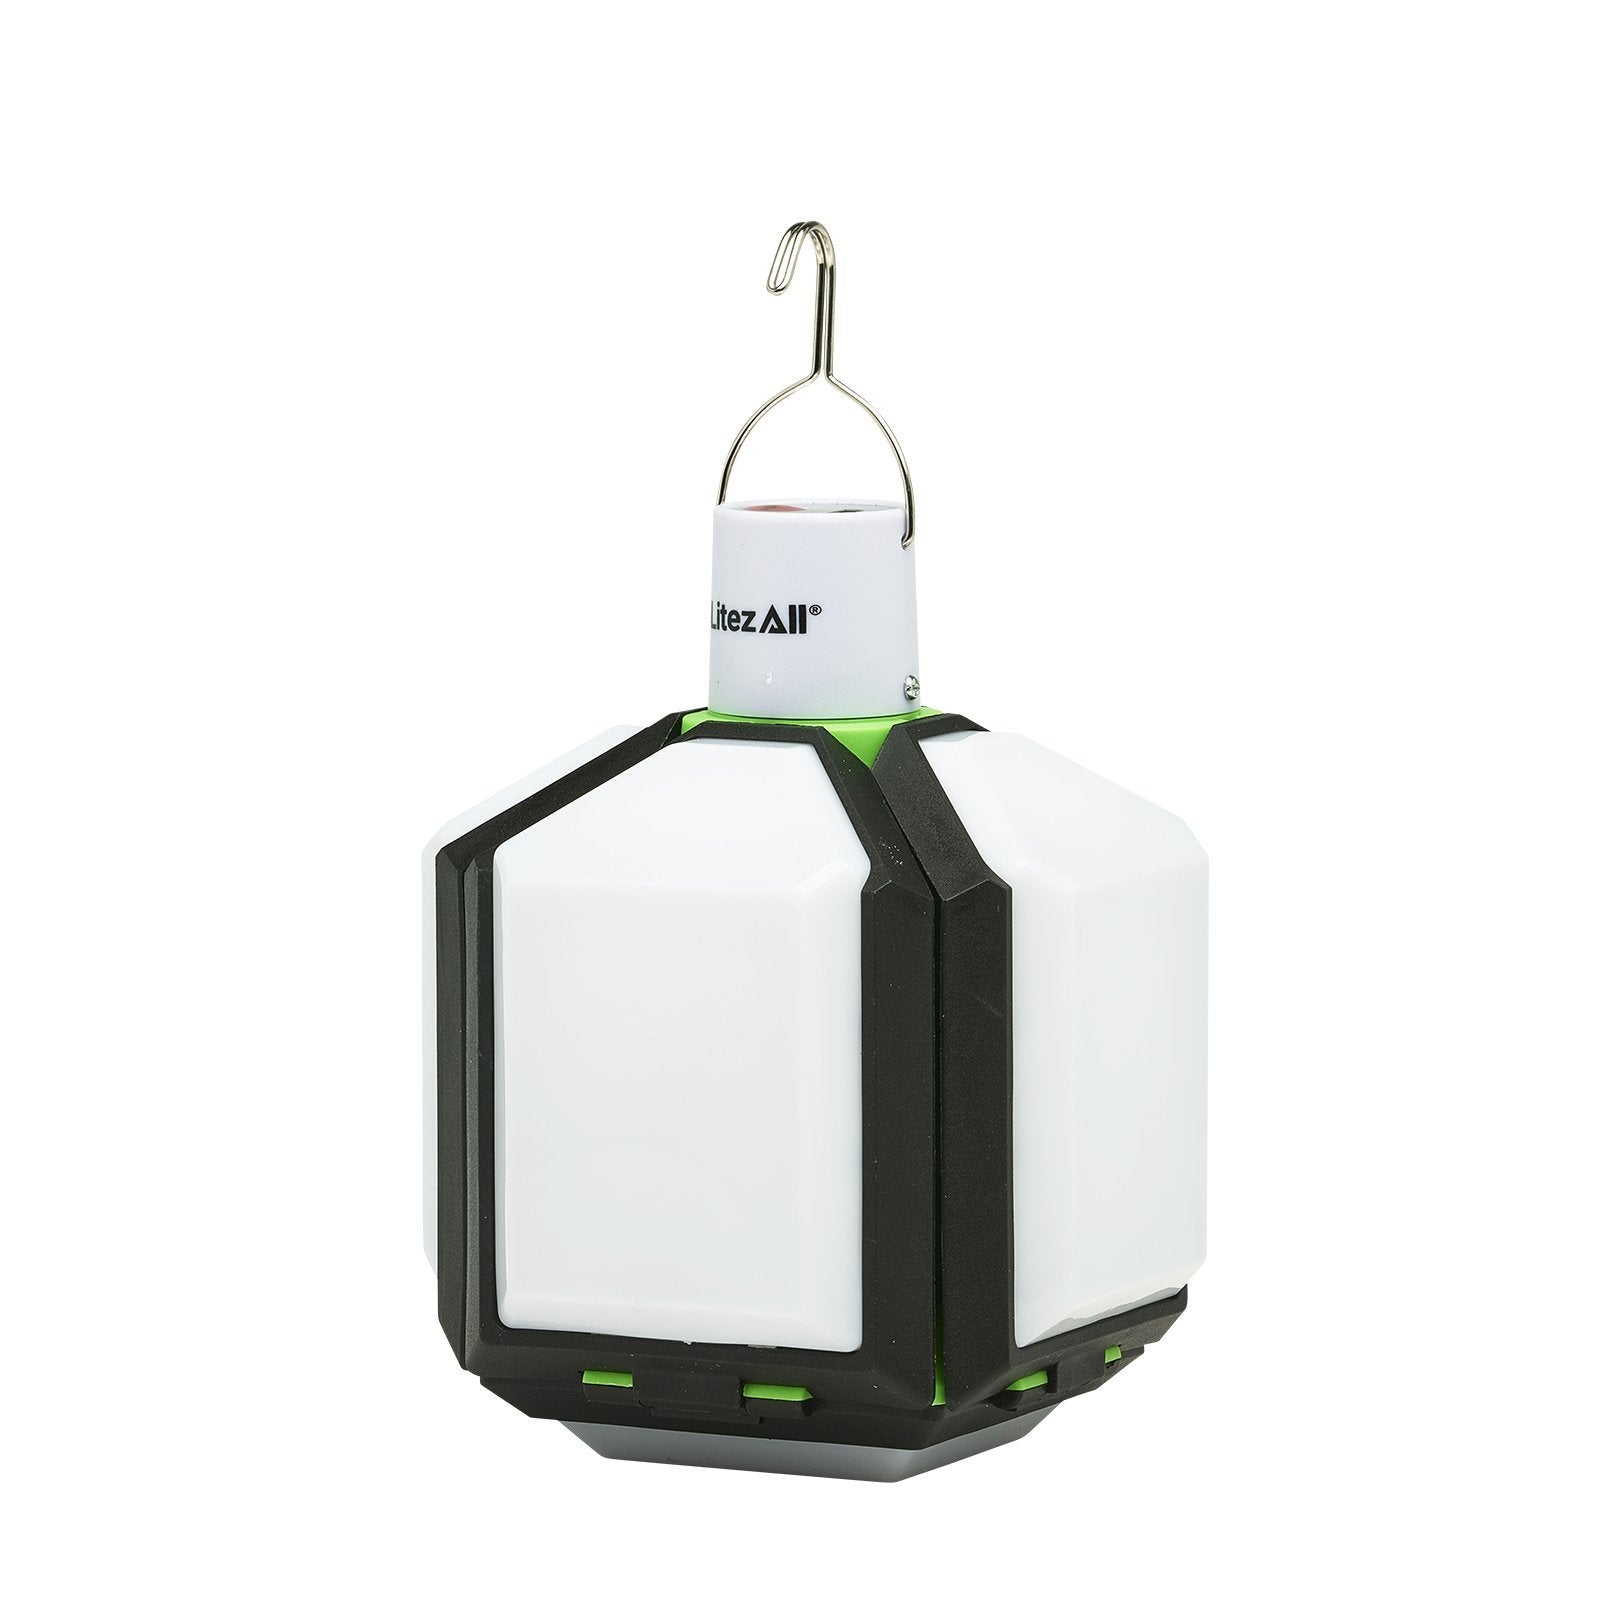 LitezAll Rechargeable Lantern with Fold-Out Panels - LitezAll - Lanterns - 22